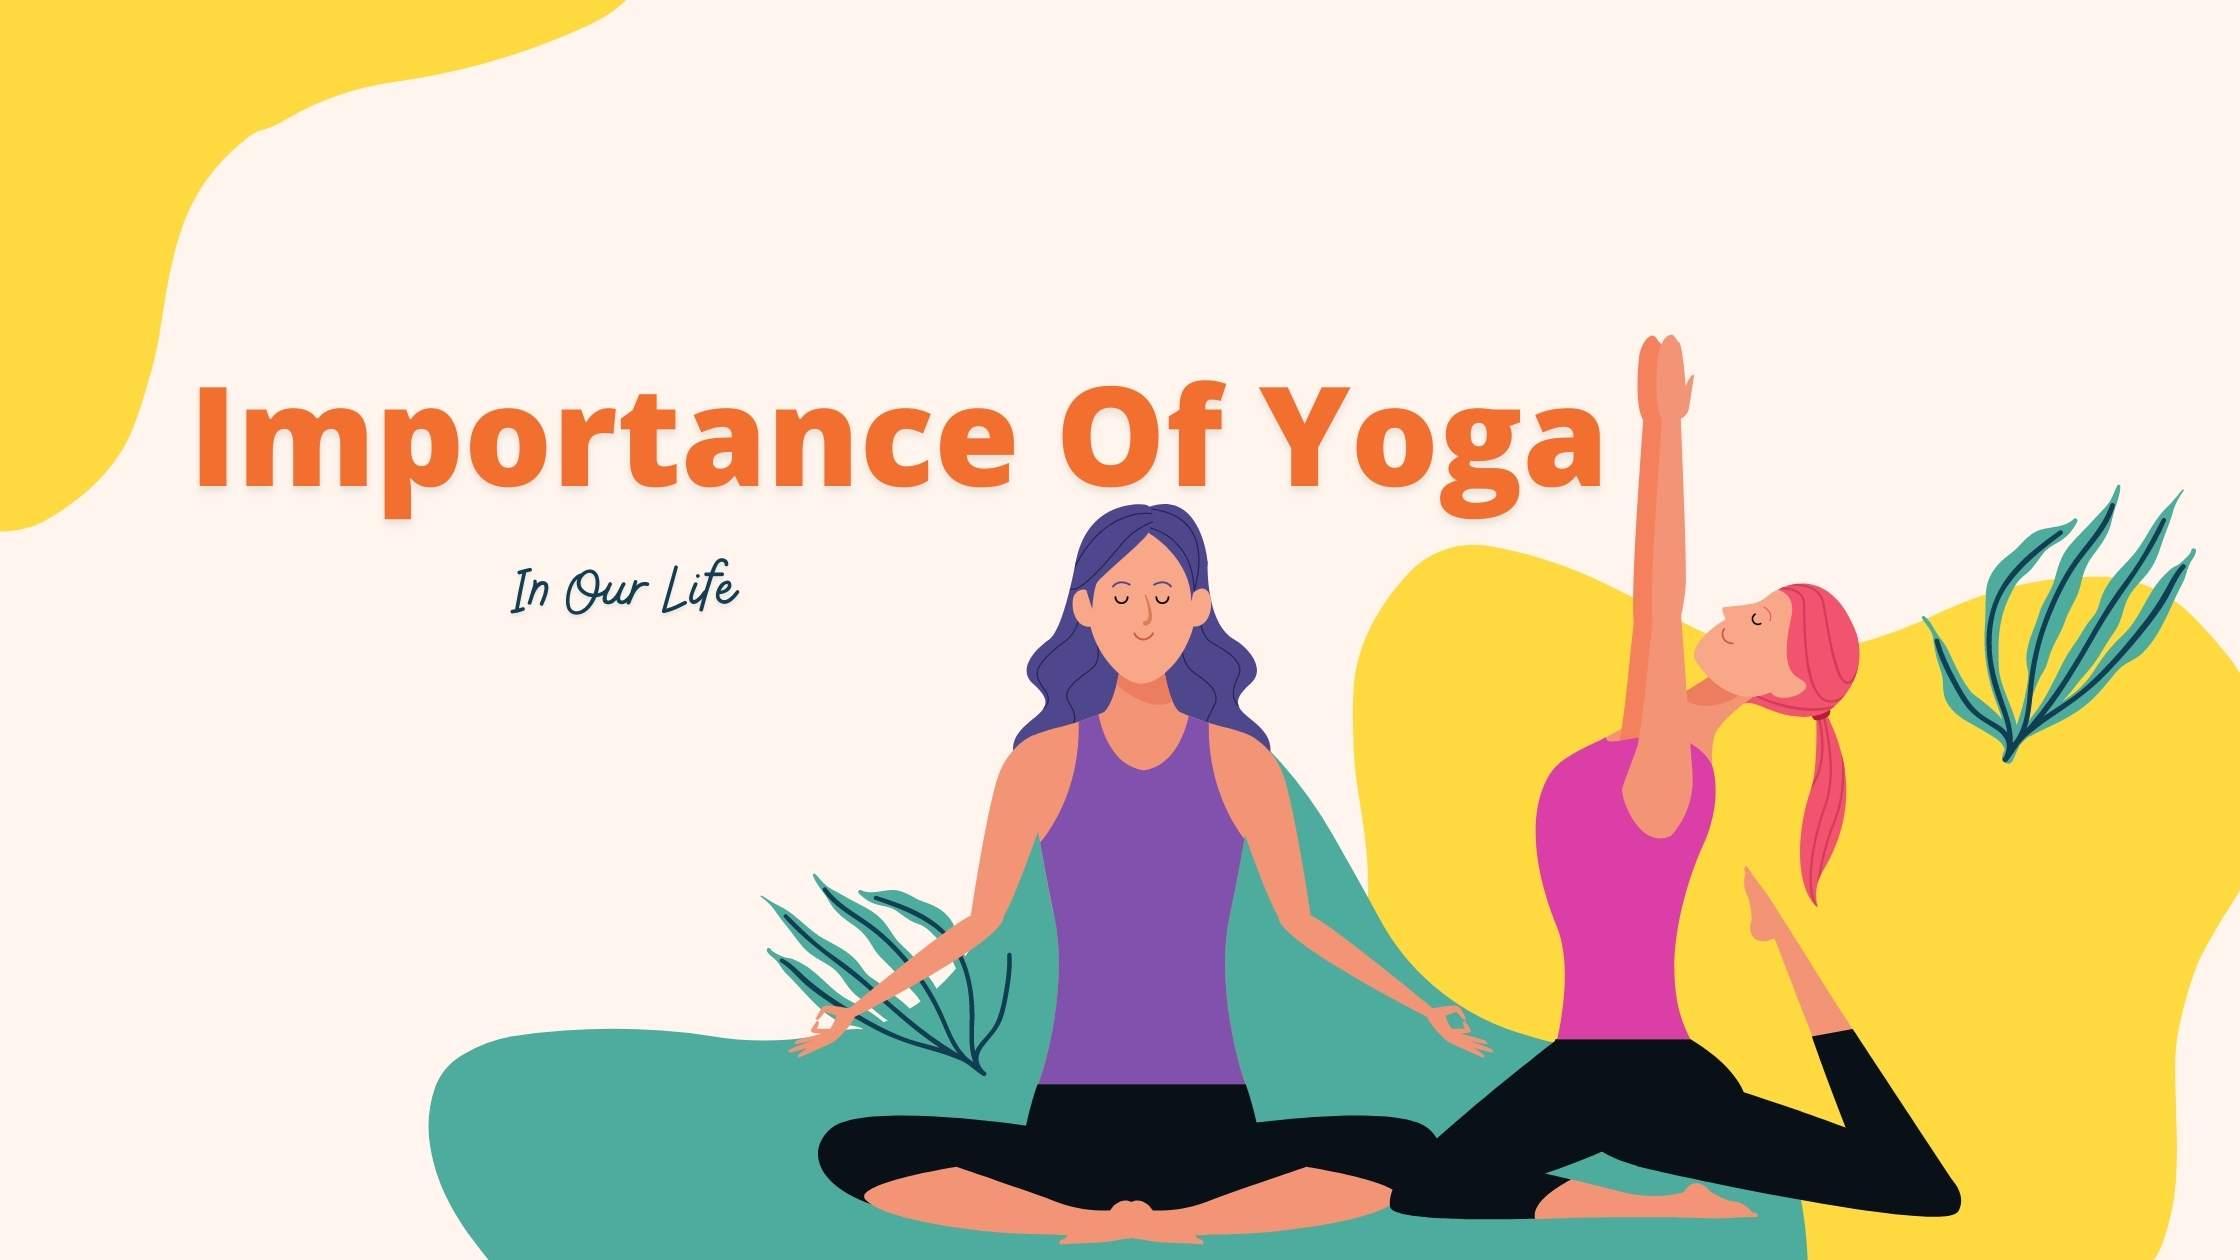 Yoga For Life - Yoga for Life, Health, Wellness, Education